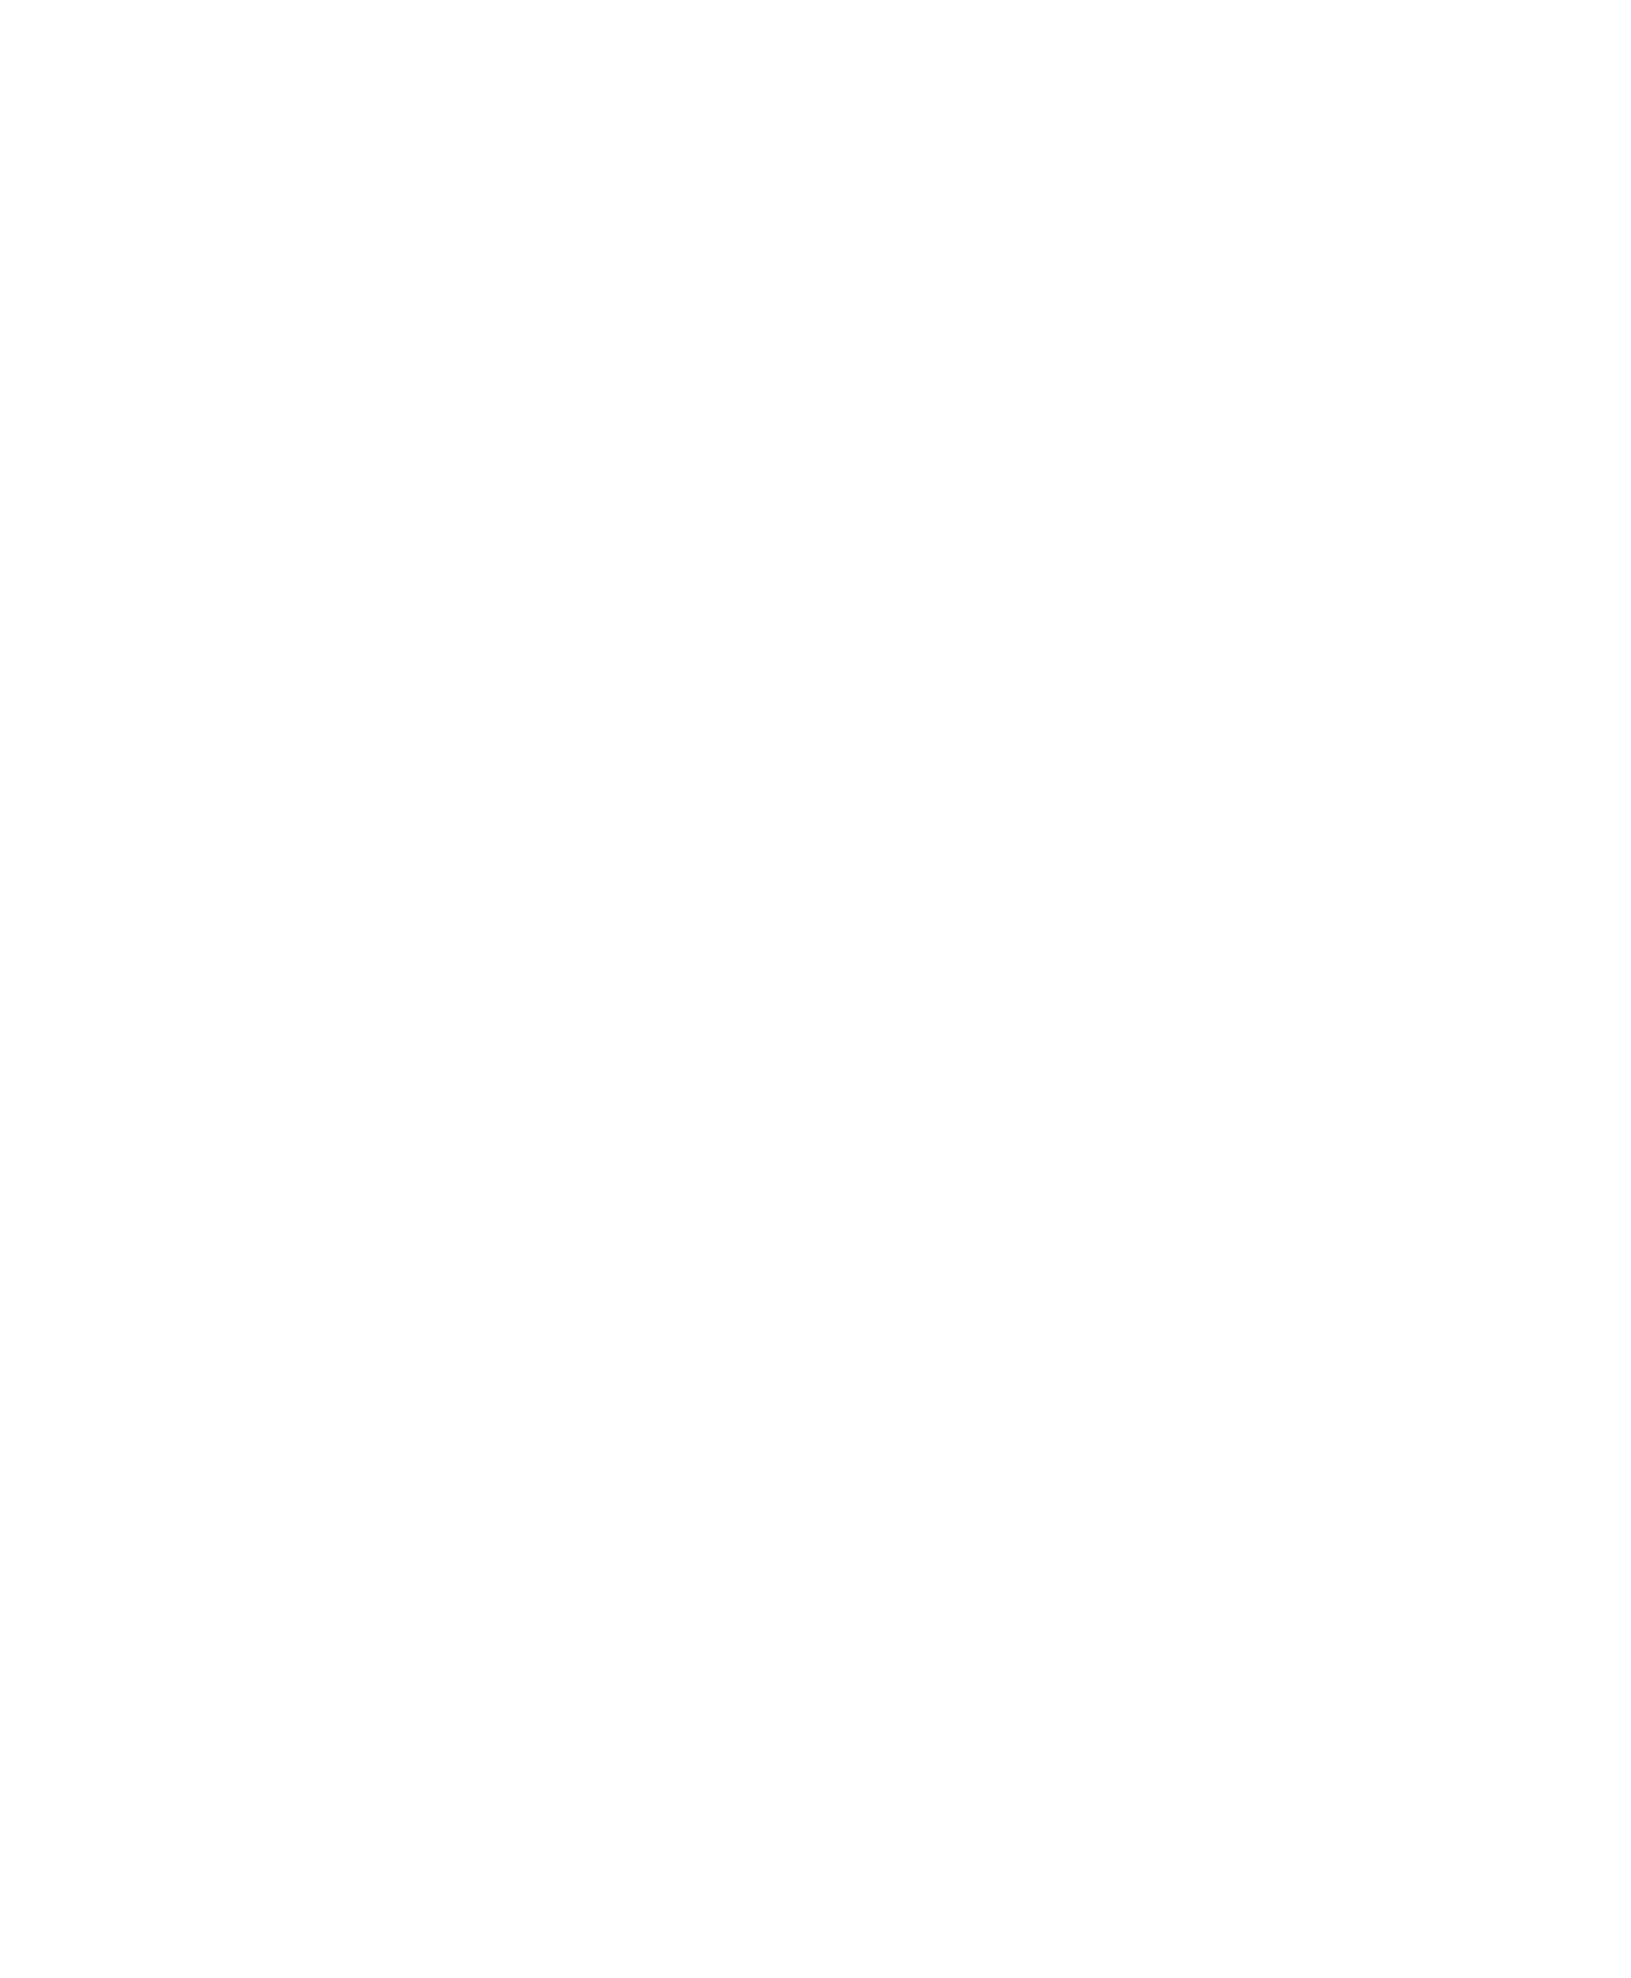 GO TEXAN Associate Member